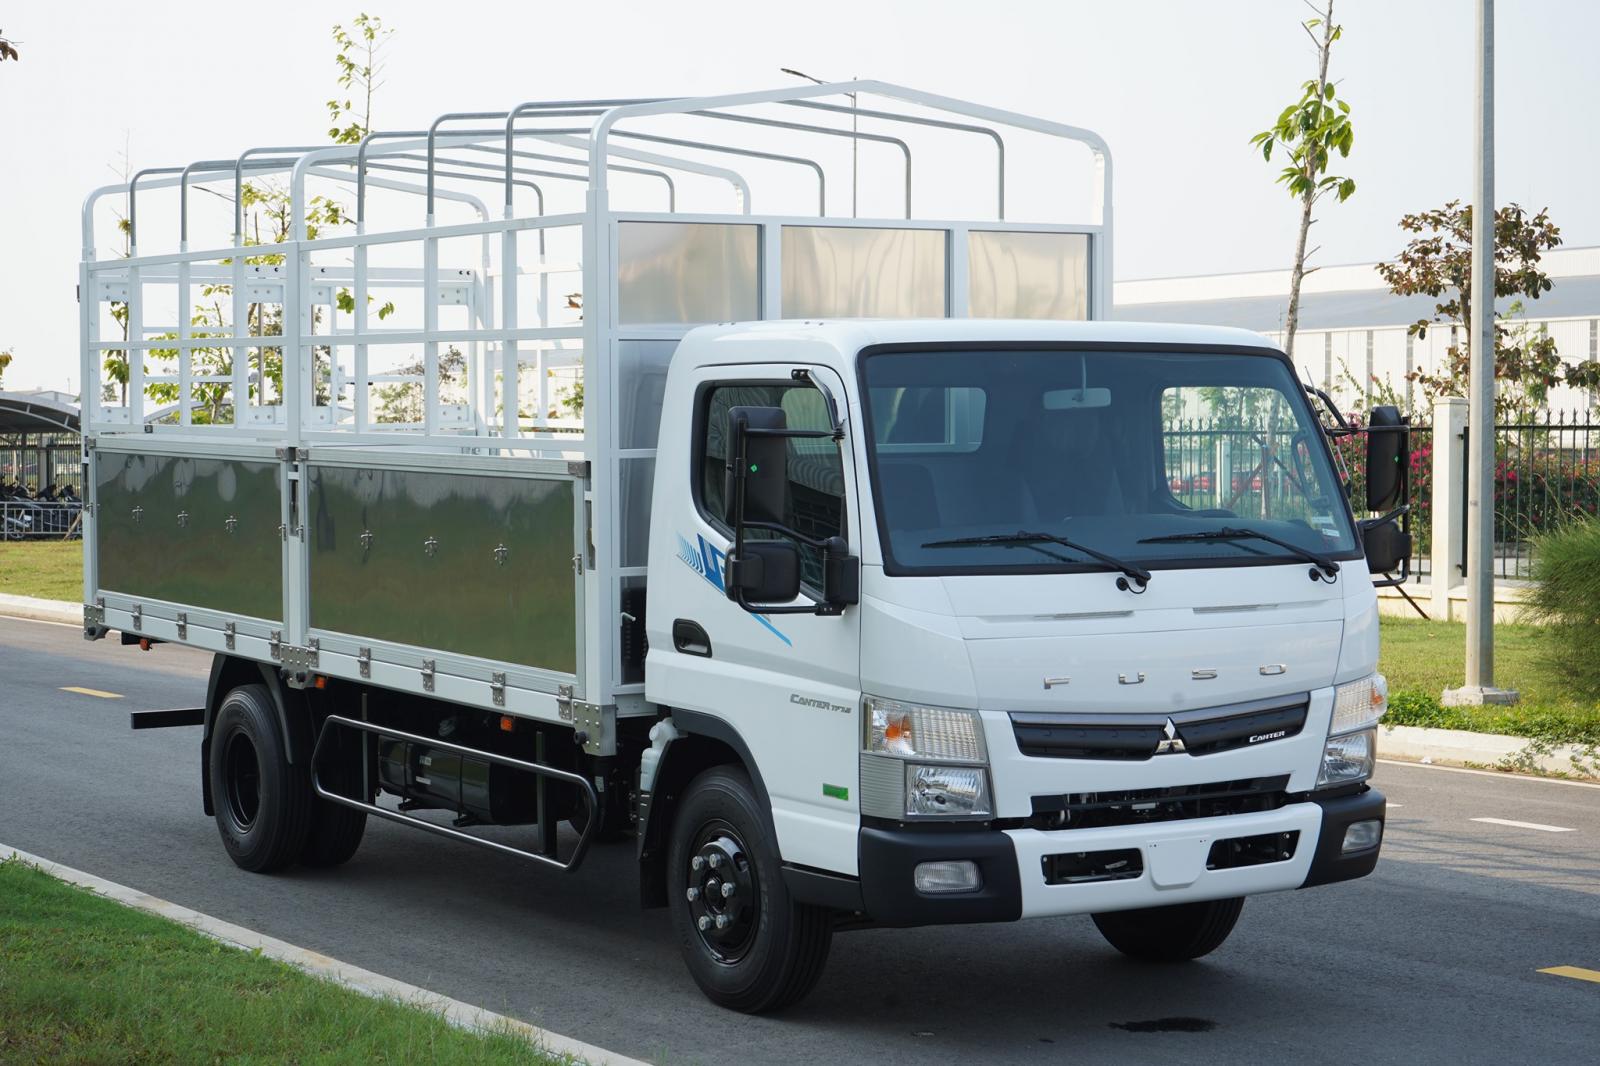 Mitsubishi Mitsubishi khác Canter TF4.9 2022 - Xe tải Nhật Bản 2 tấn thùng dài, hỗ trợ trả góp 70% tại Thaco Bình Dương